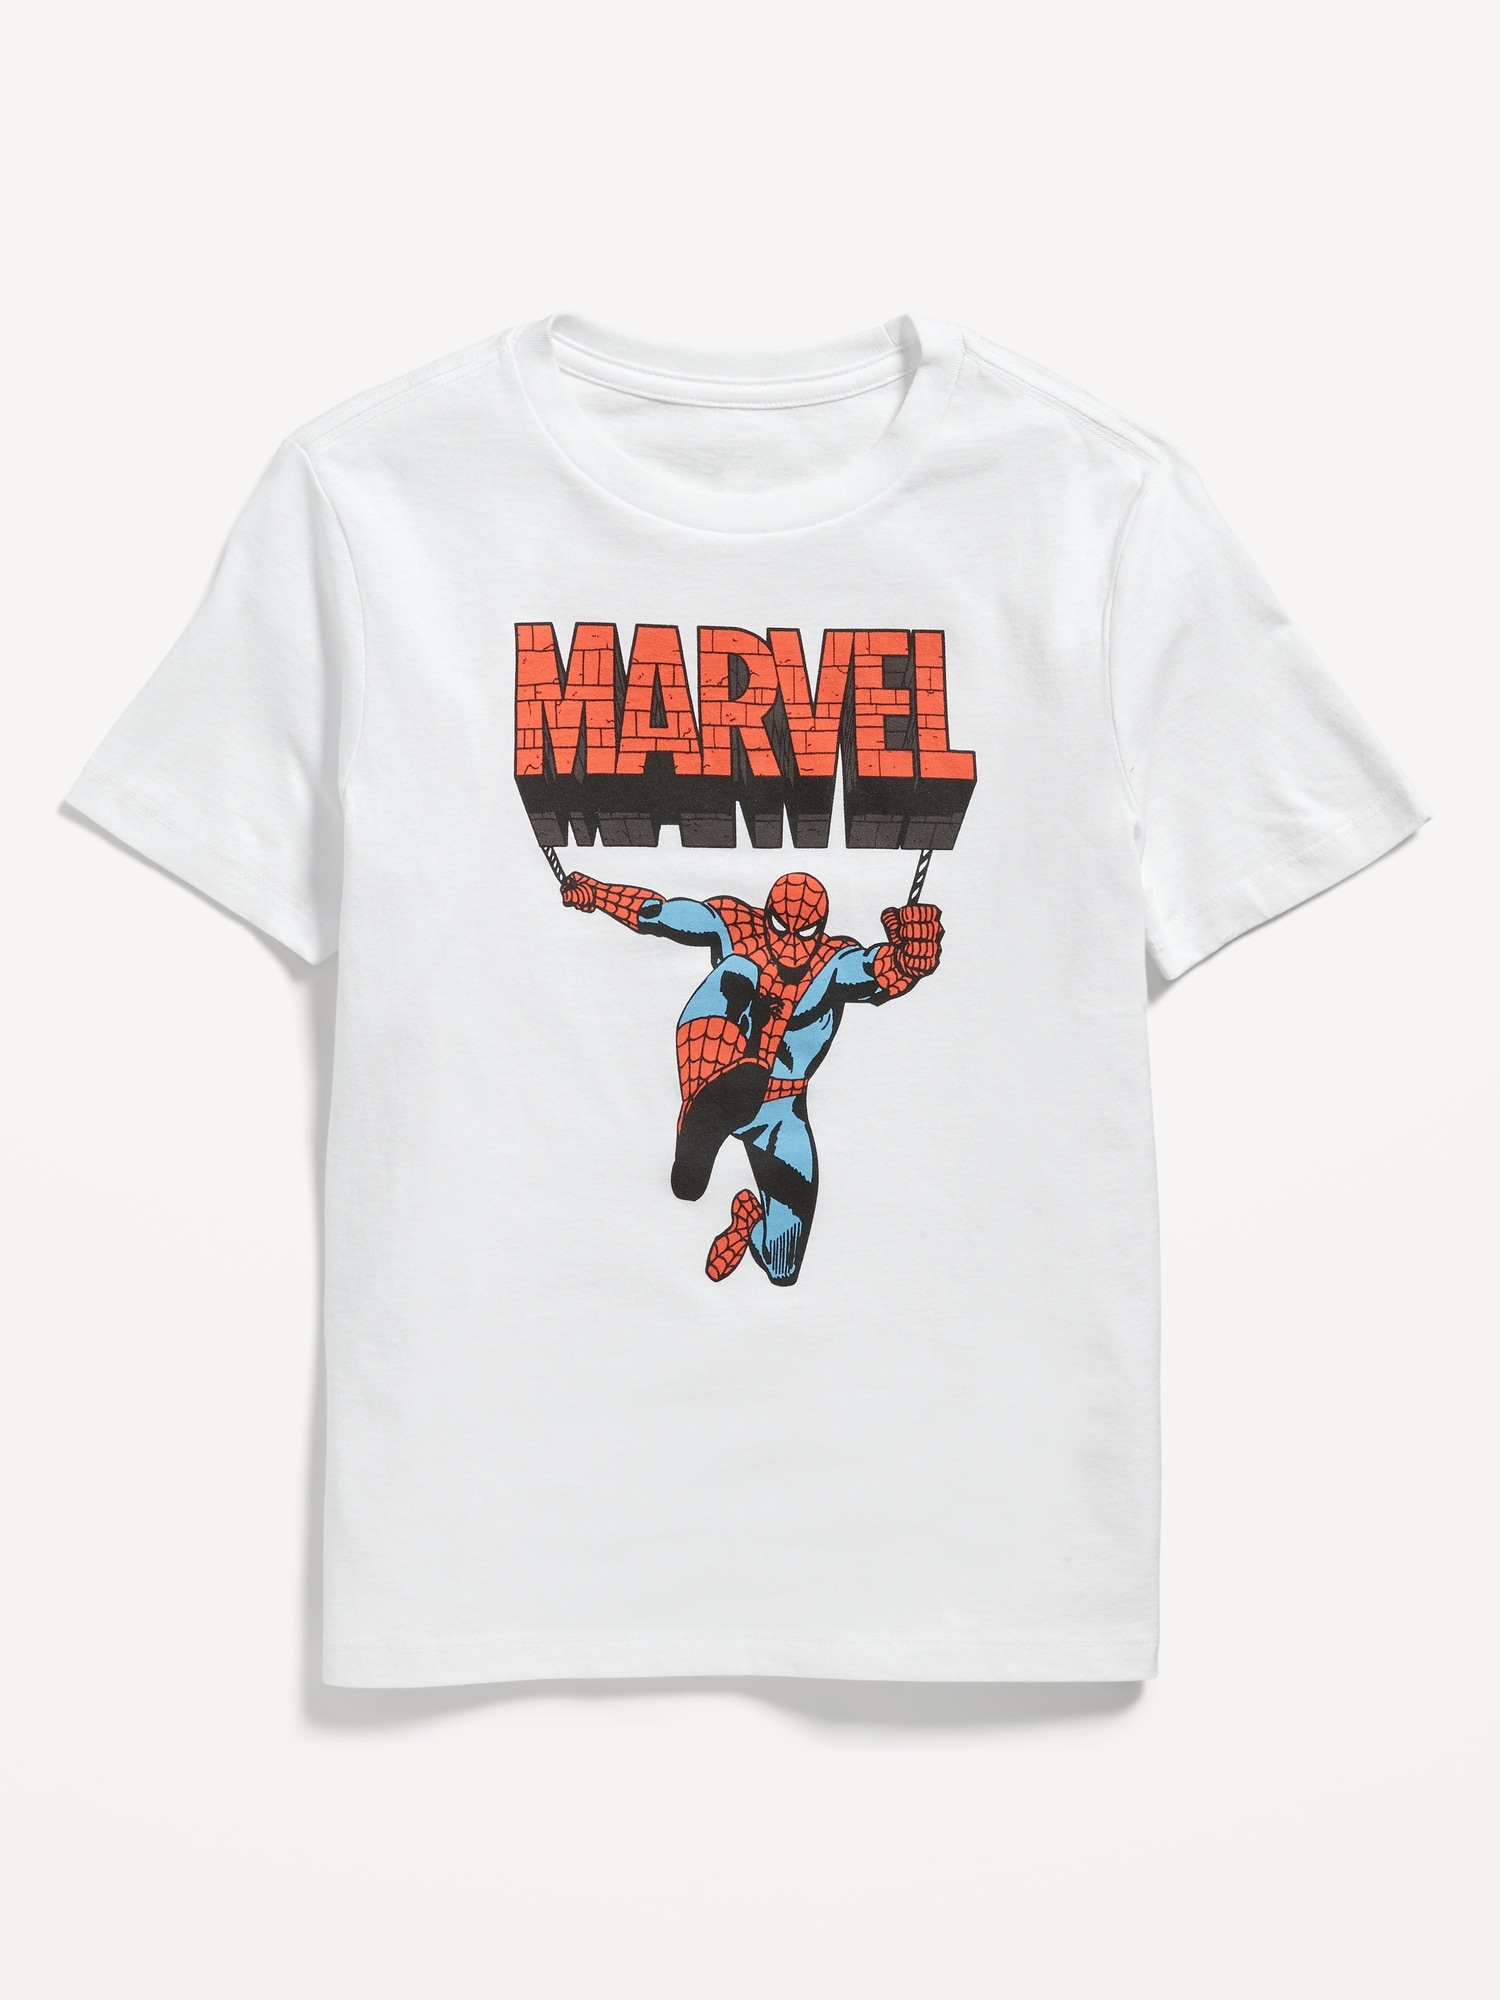 Men's Marvel Spider-Man Short Sleeve Graphic T-Shirt - White S